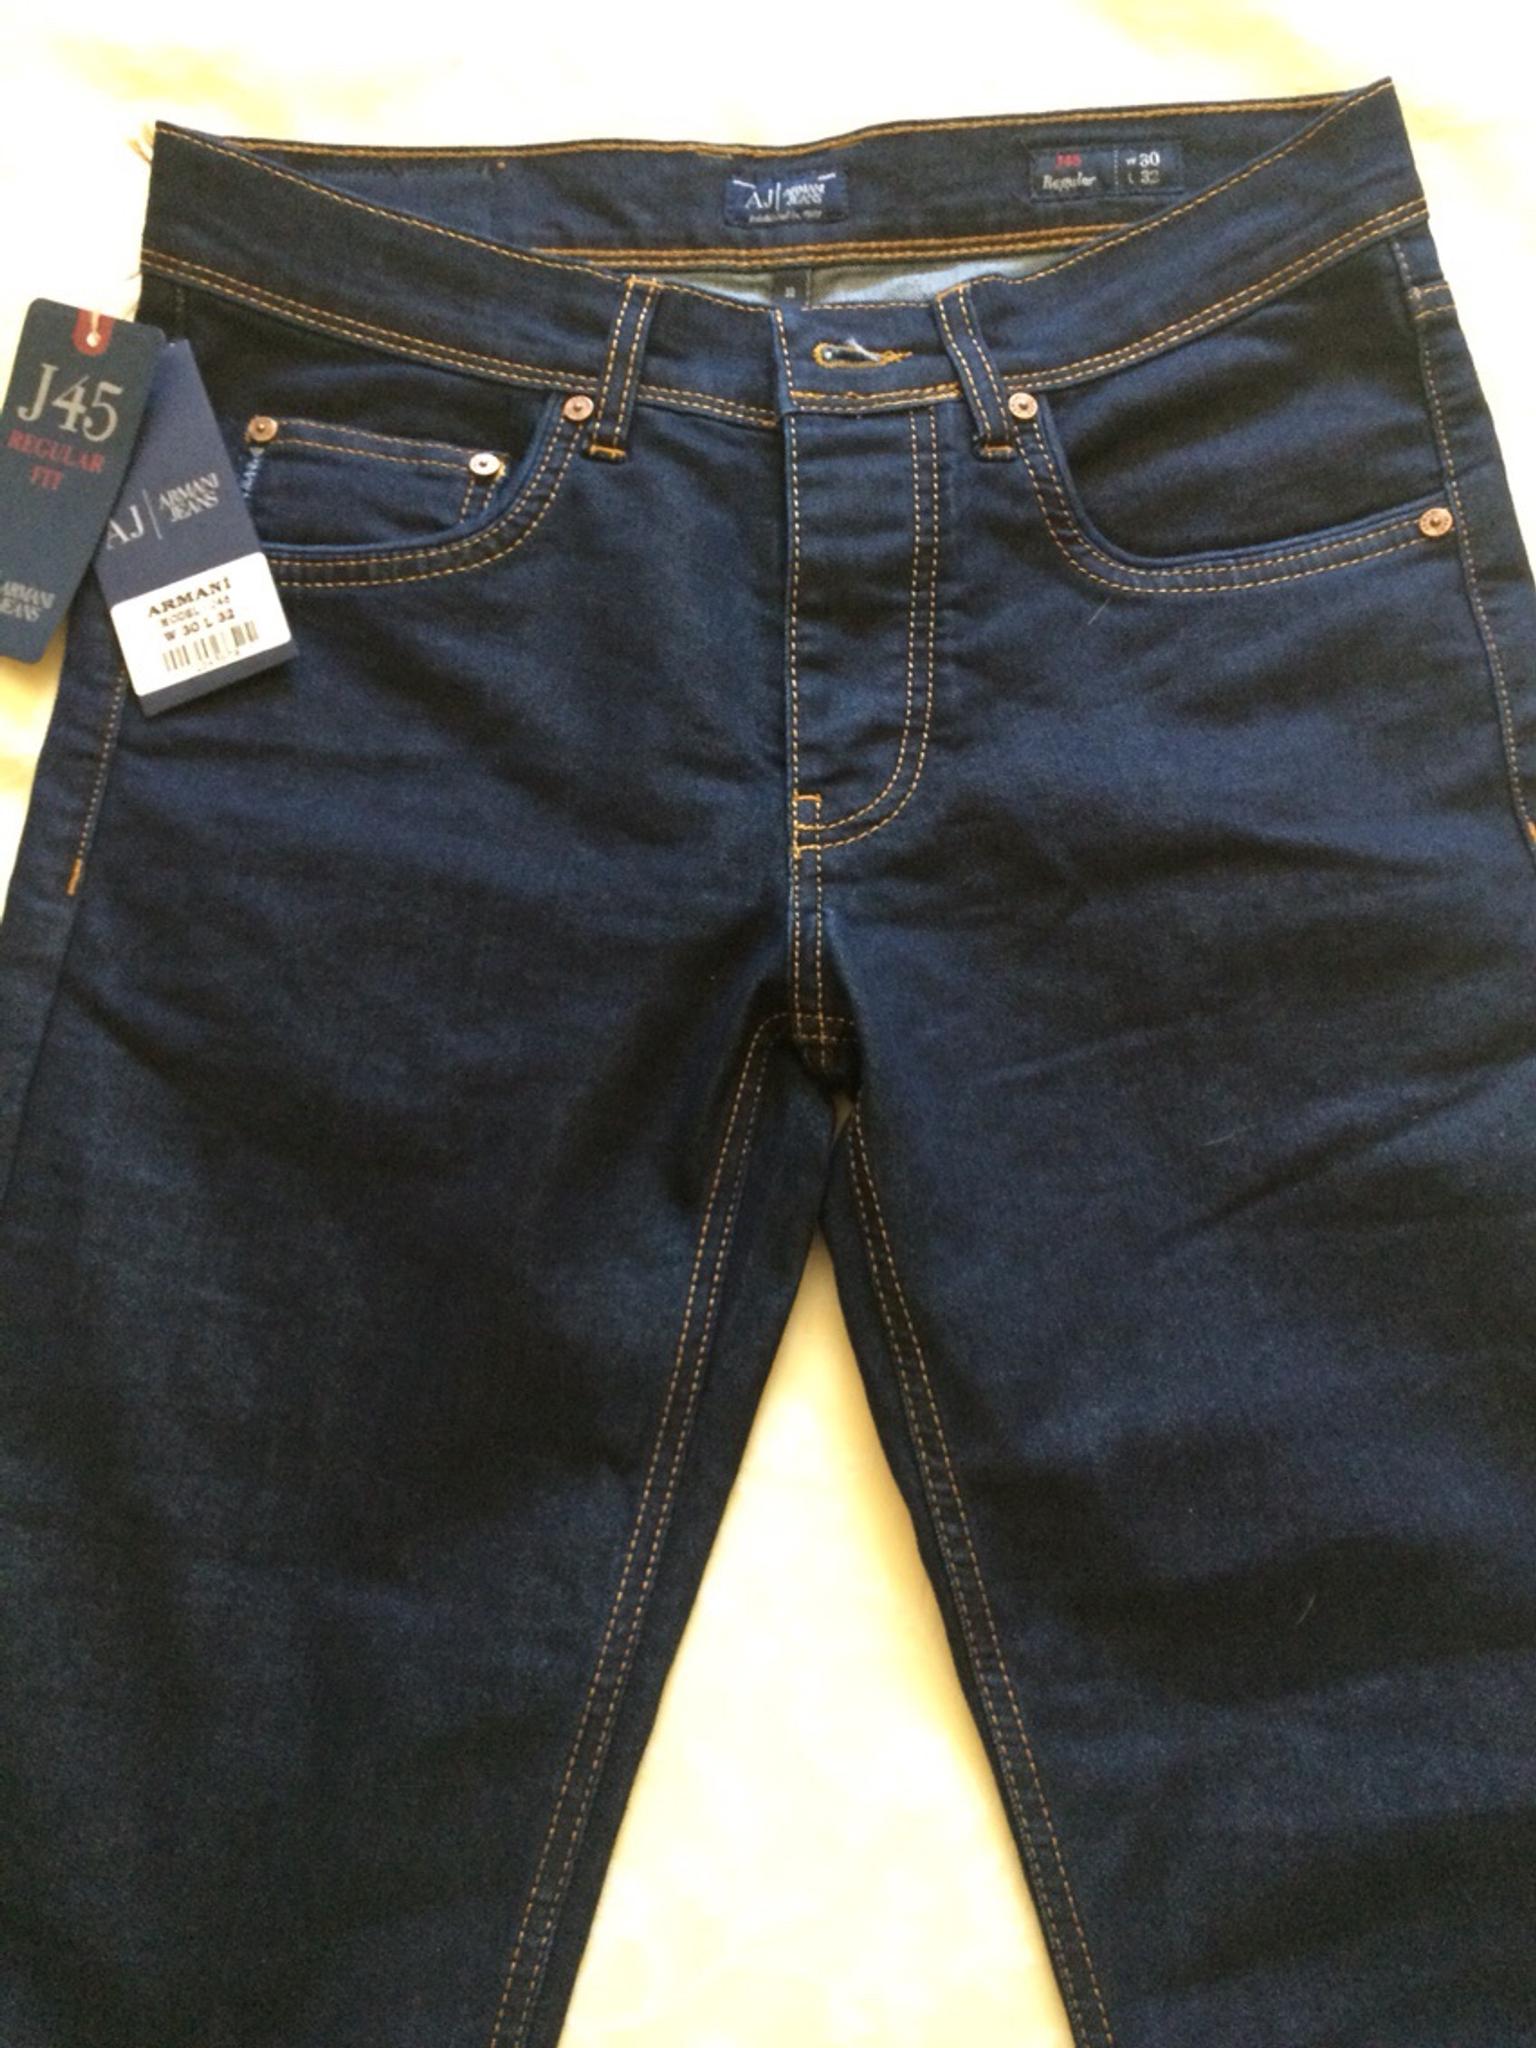 armani jeans j45 regular fit